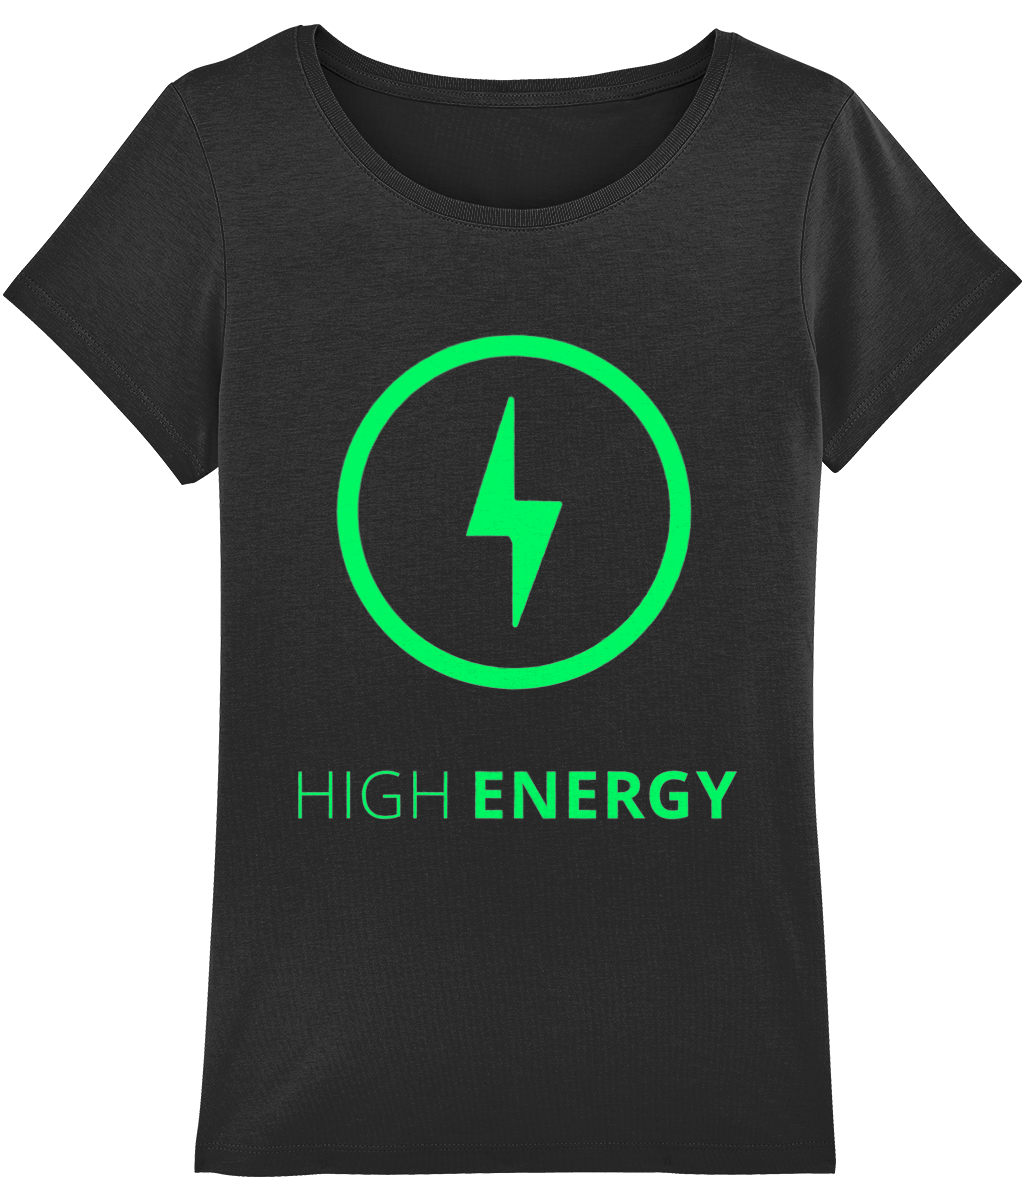 HIGH ENERGY WOMEN'S T-SHIRT